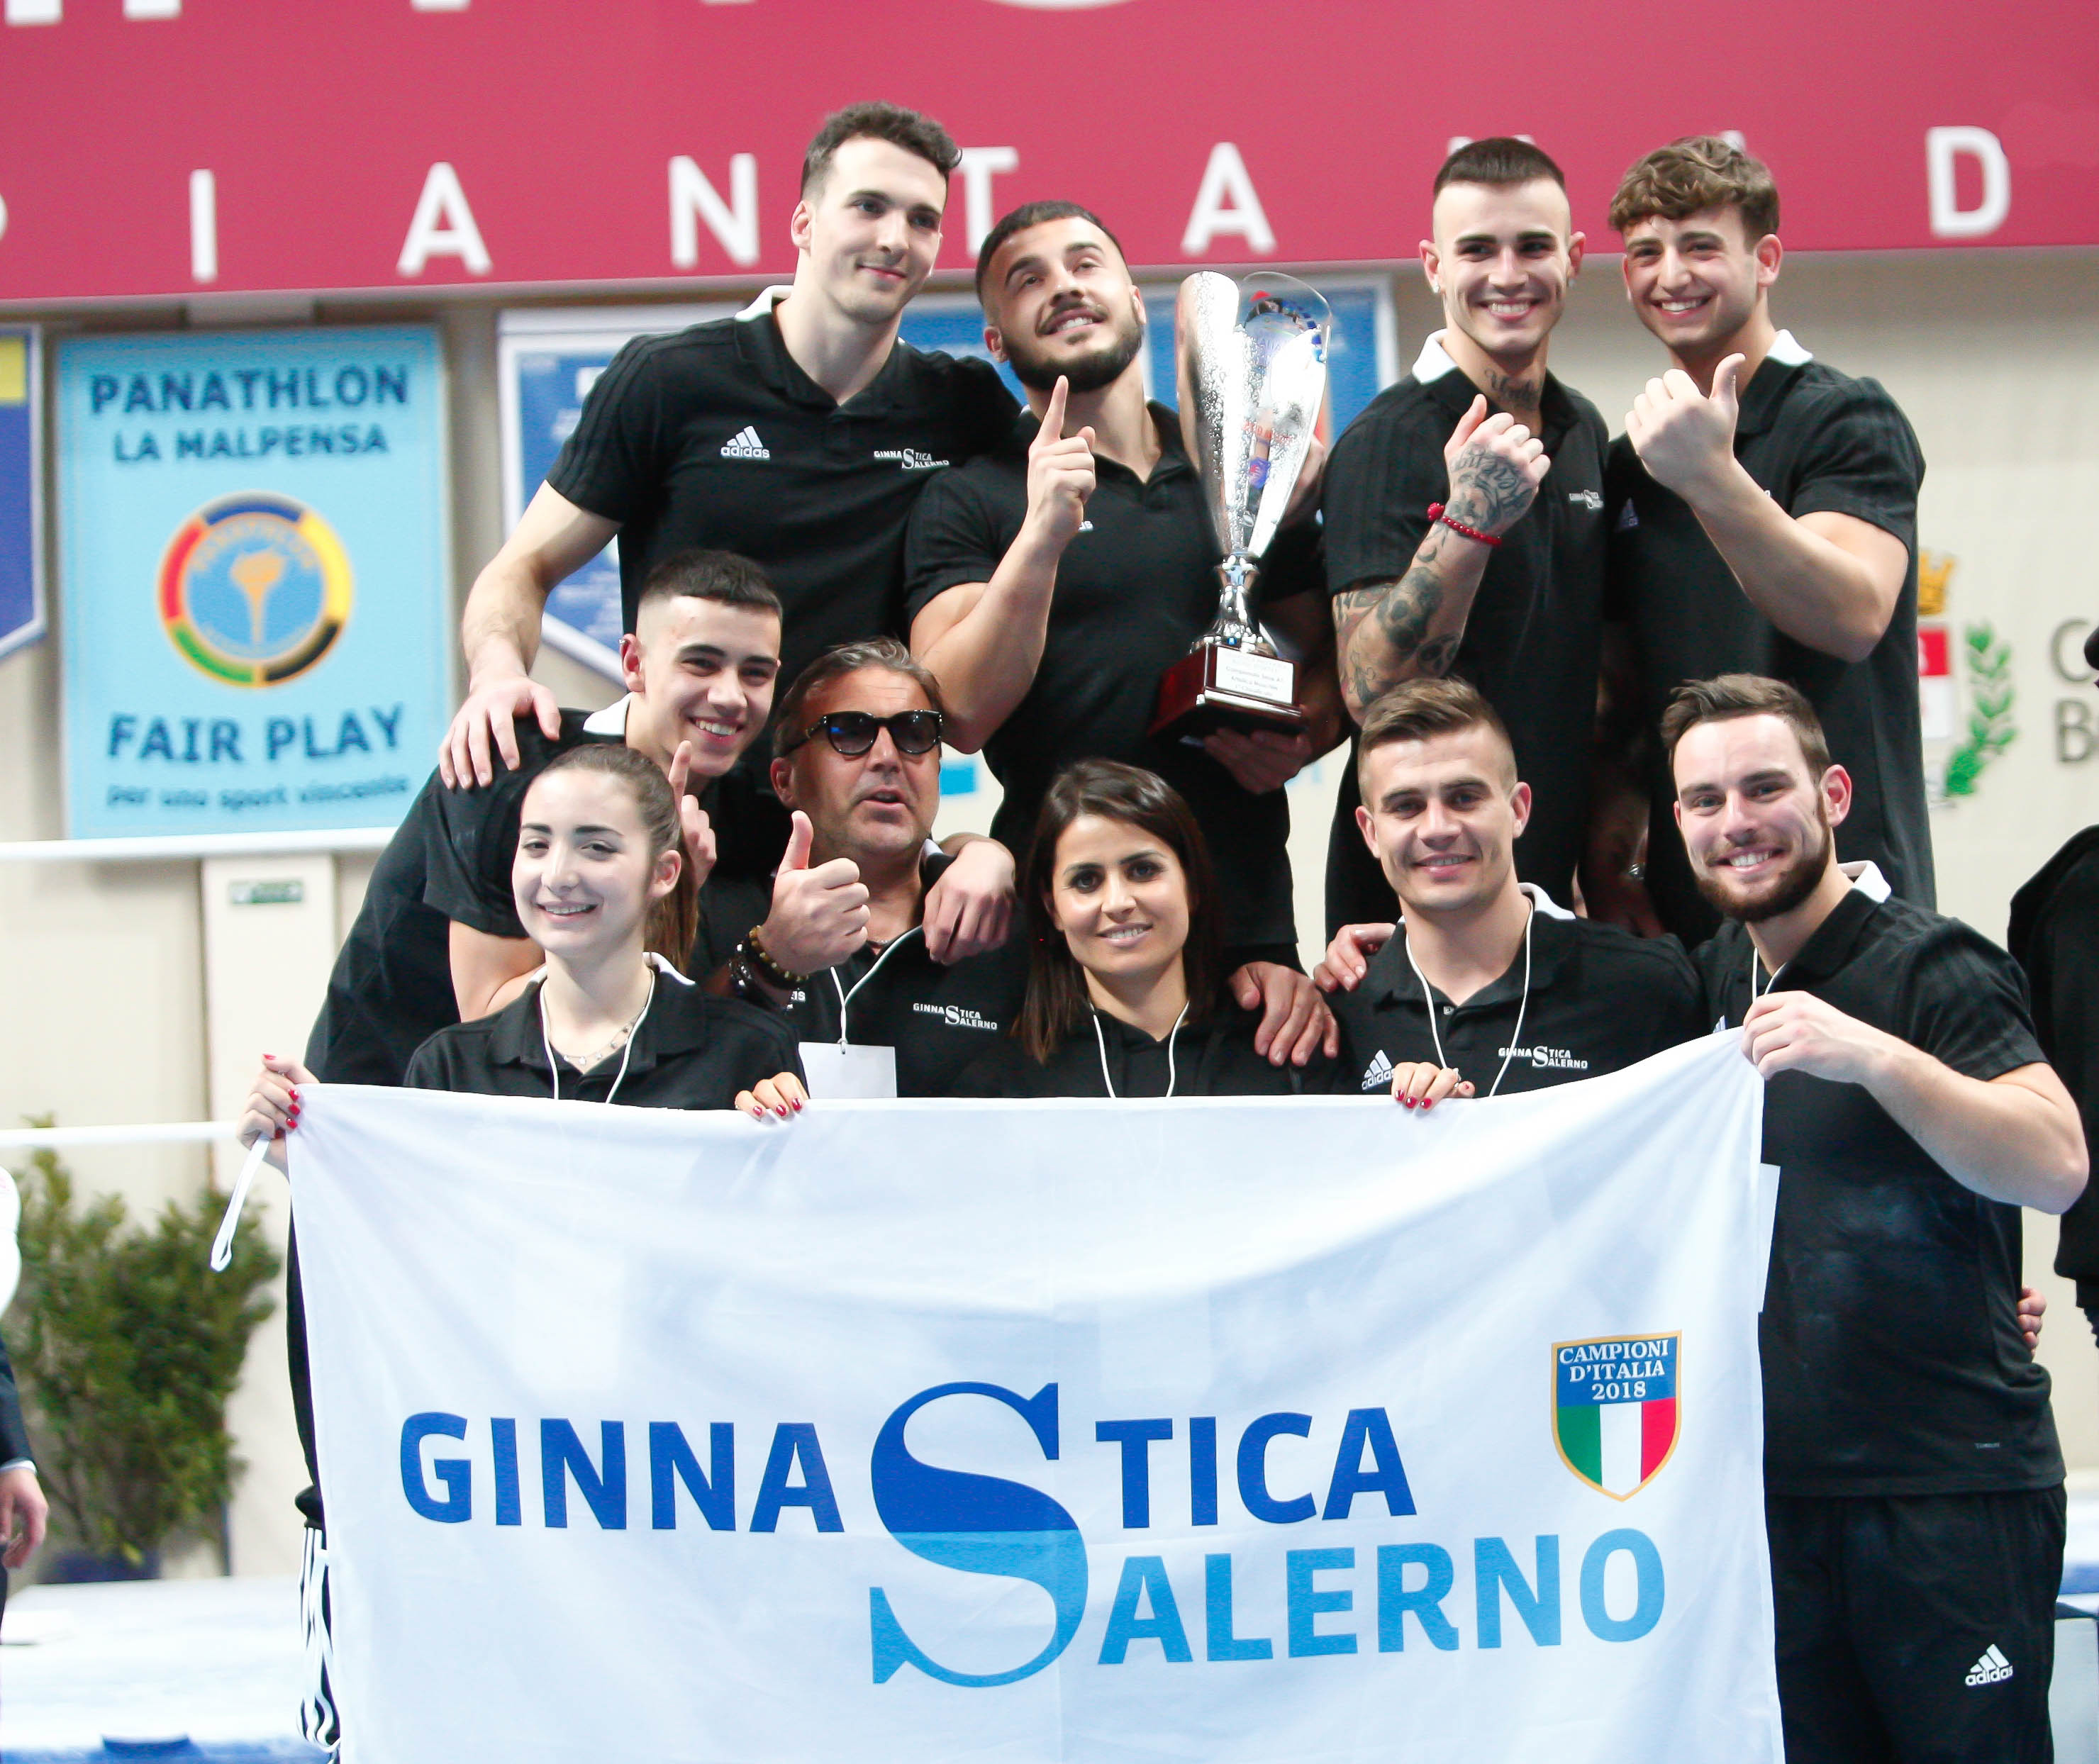 Ginnastica Salerno trionfa nella prima prova del Campionato Italiano di Ginnastica Artistica. 1